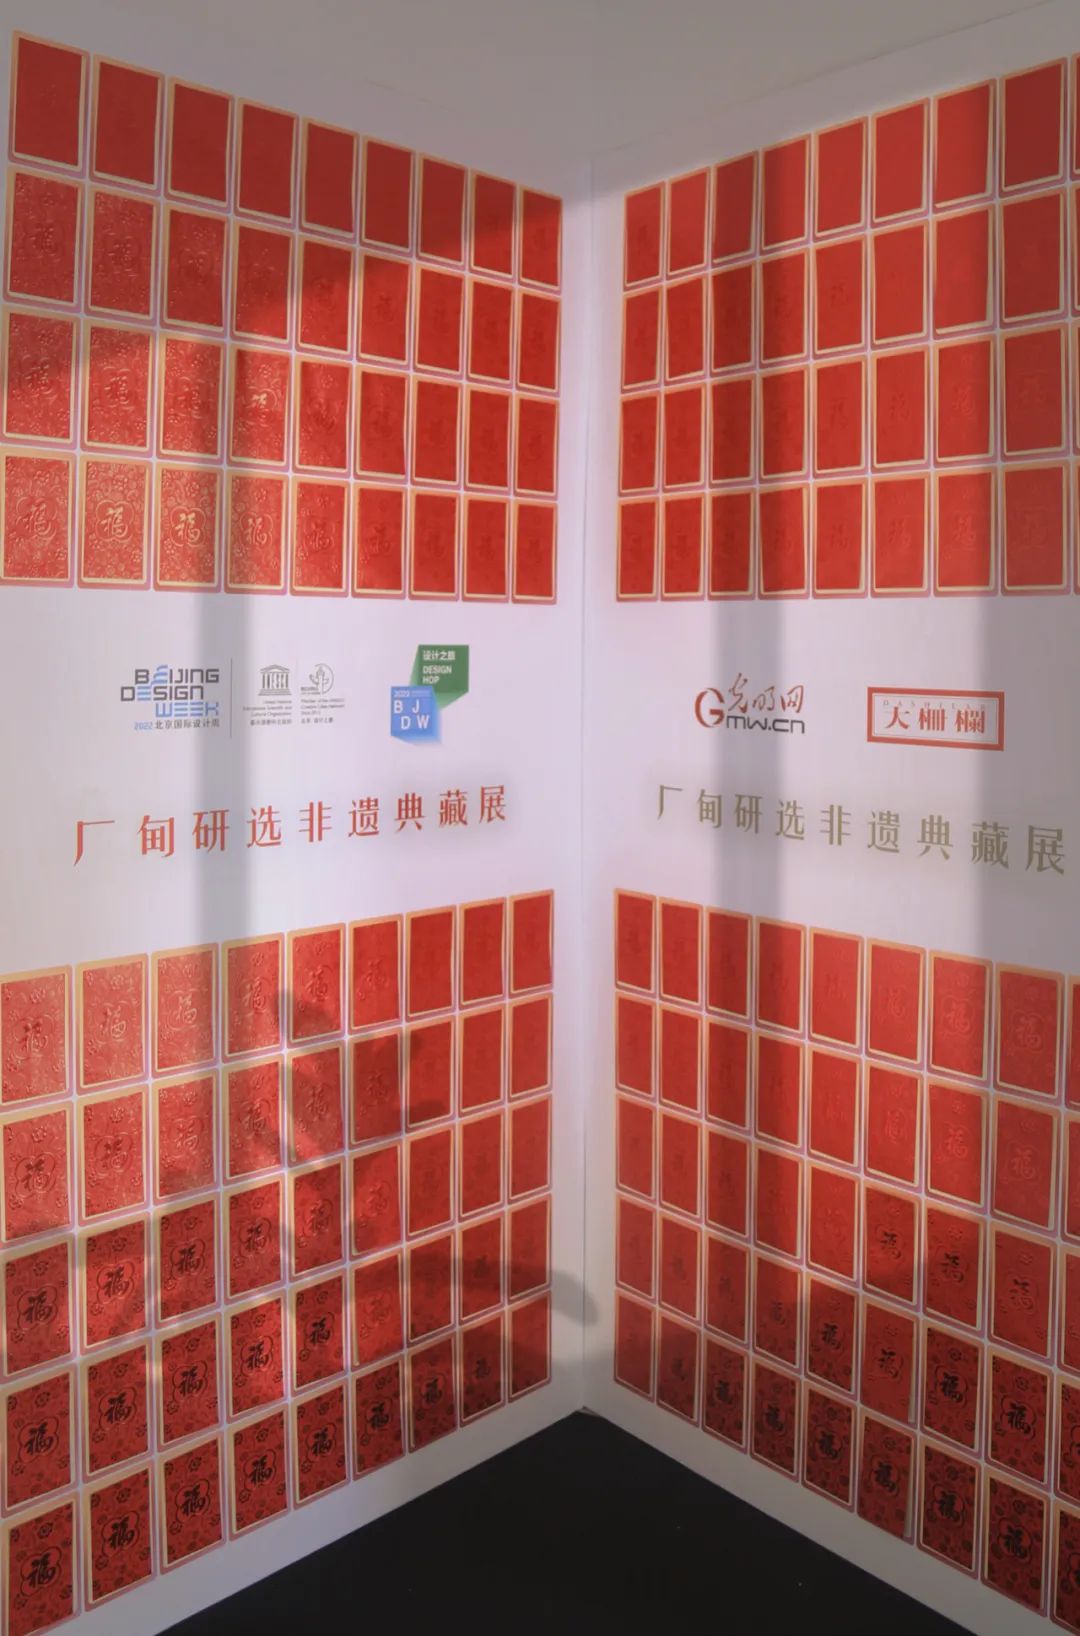 厂甸庙会双展齐聚北京国际设计周 策动西城非遗“硬核”呈现